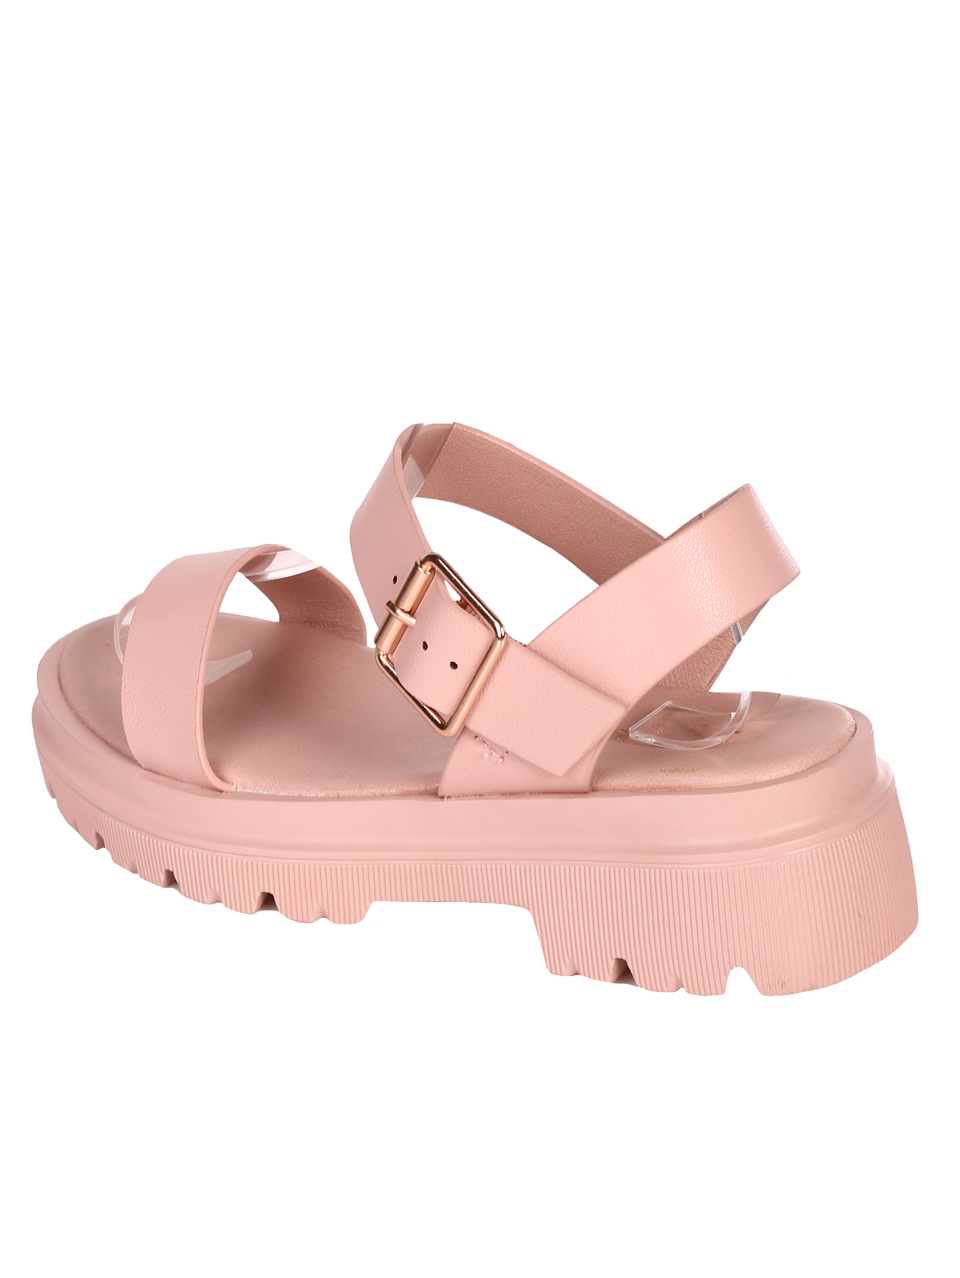 Ежедневни дамски сандали в розово 4H-23110 pink